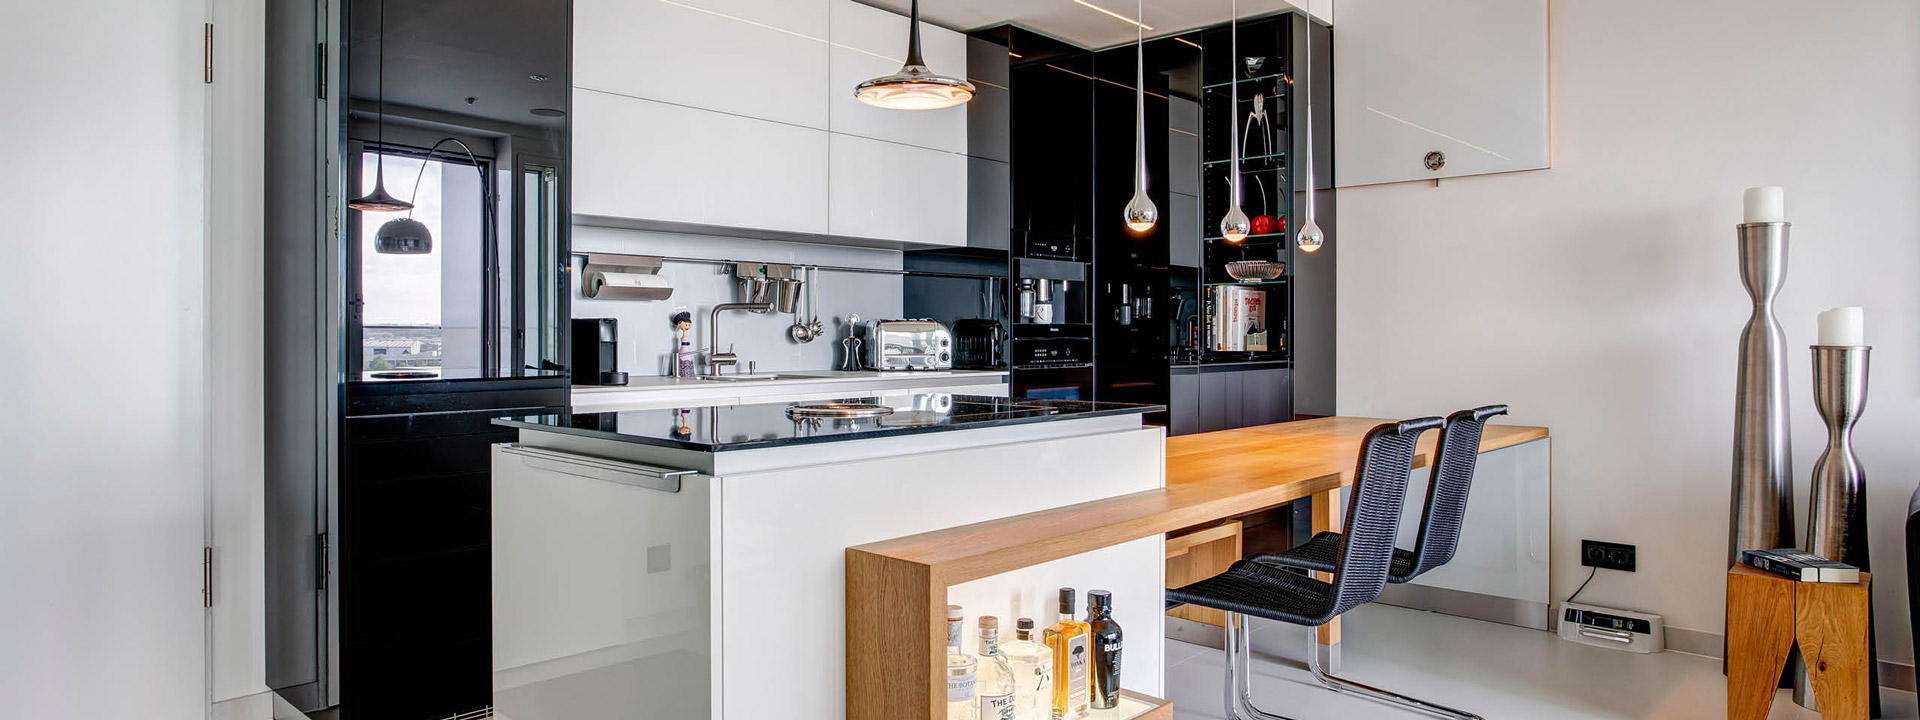 Gleich einen Küchenberatungstermin vereinbaren. Designküche bzw. Designerküche von der Möbeltischlerei woodendesign mit Funktionalität & Design in perfekter Symbiose aus Hamburg